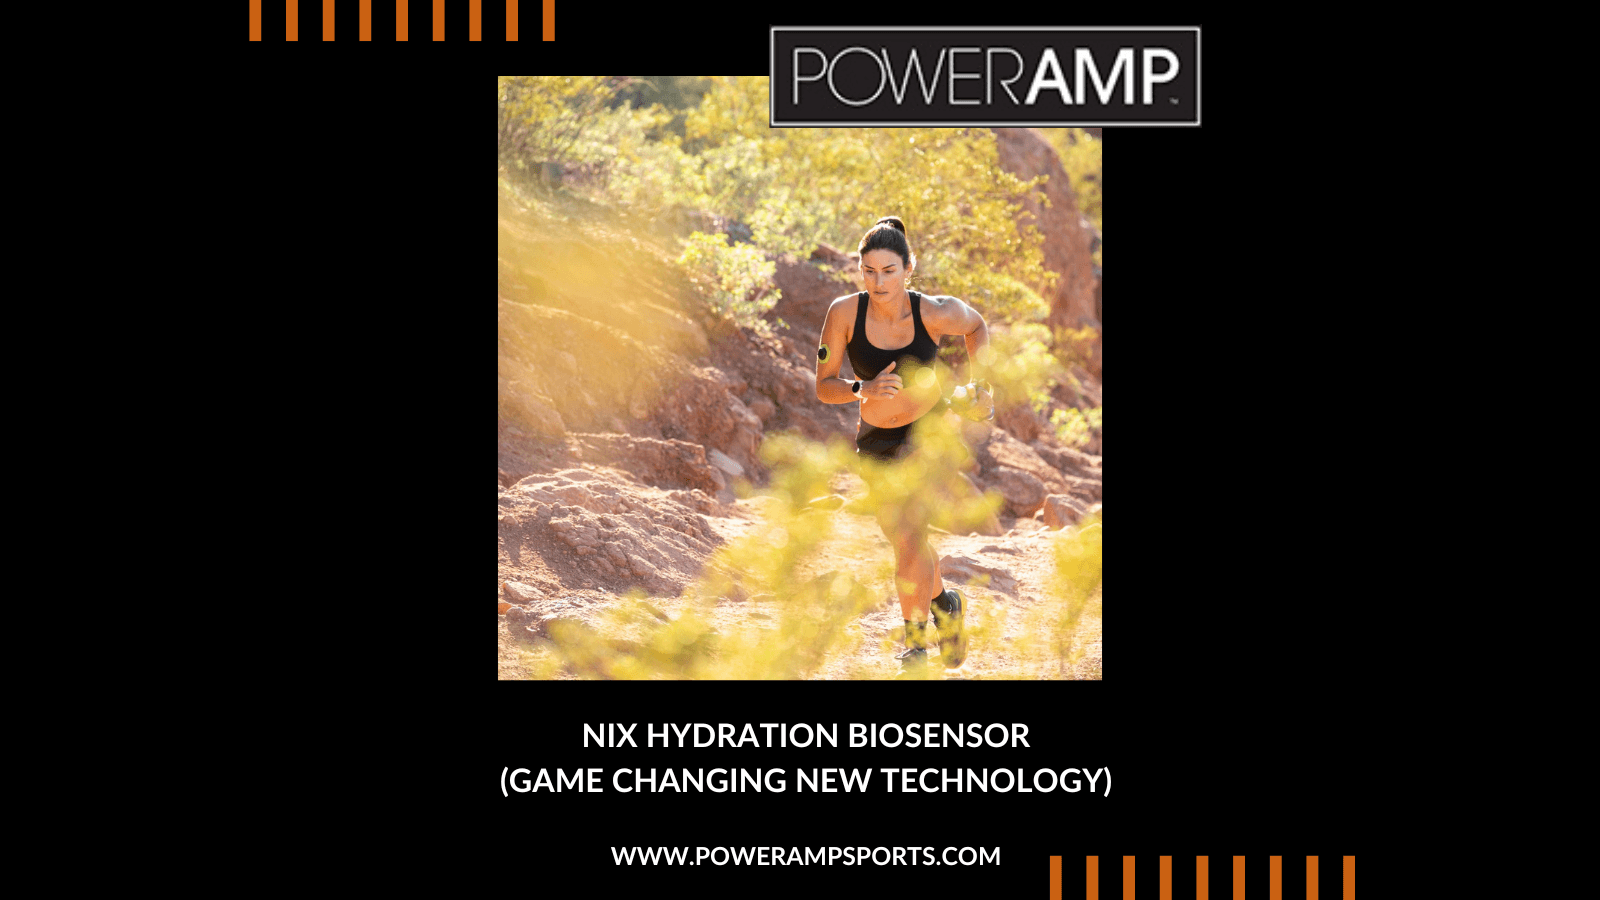 Nix Hydration Biosensor—Game Changing New Technology